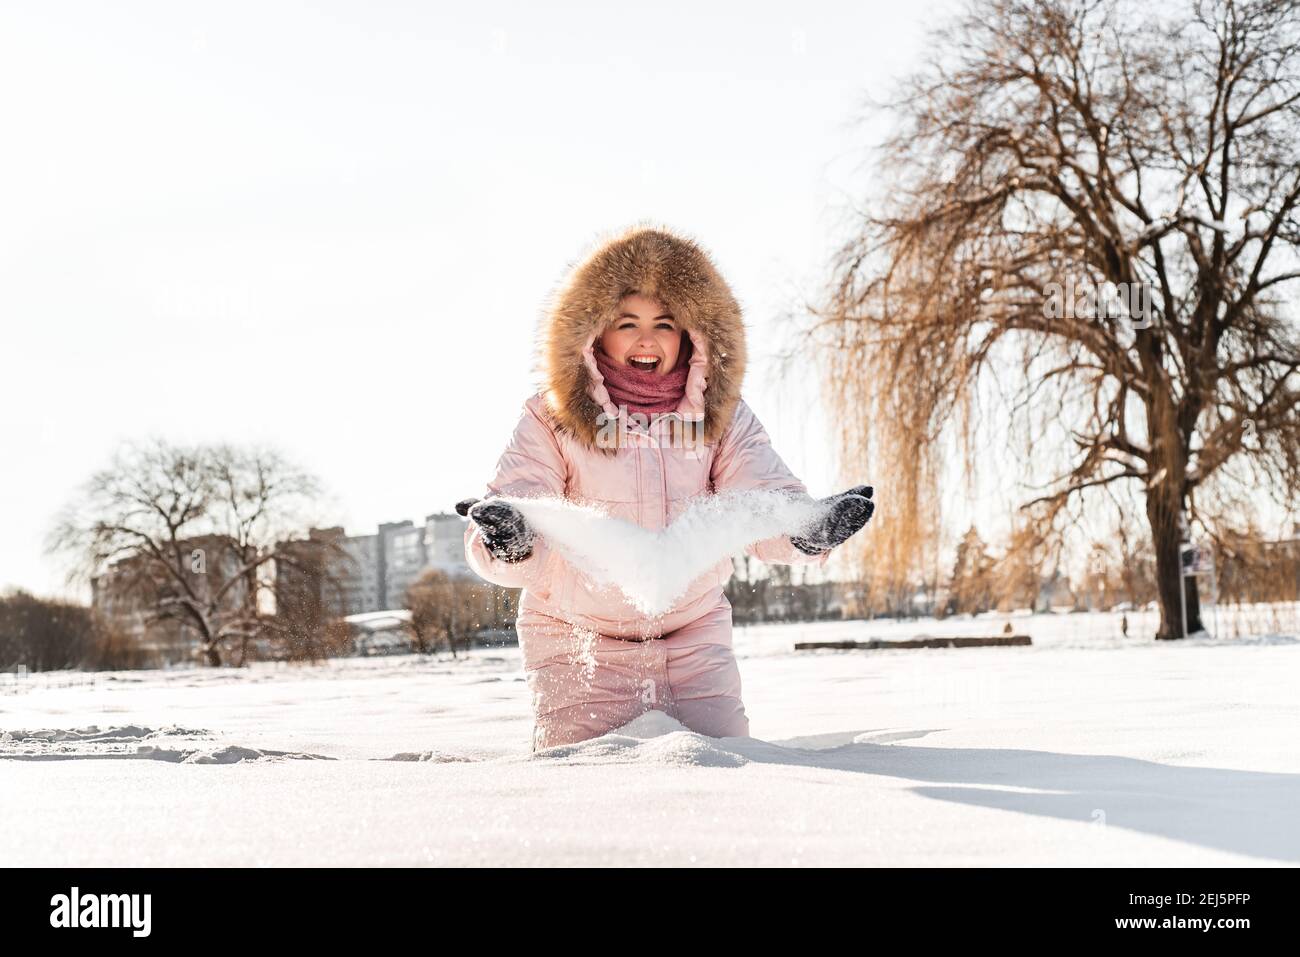 ragazza che indossa cappello invernale, sciarpa coperta di fiocchi di neve. Stile di vita attivo. Foto Stock